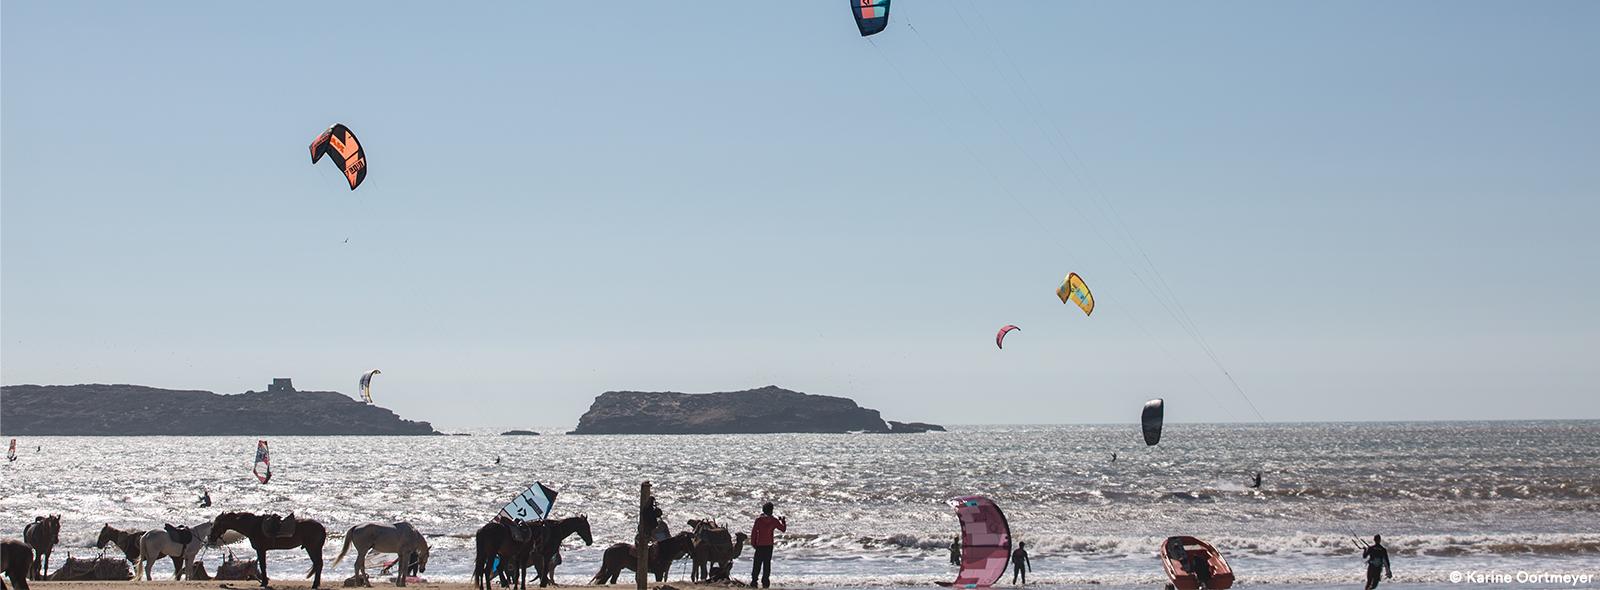 Bienvenue sur le spot de kitesurf et de windsurf sur Essaouira au Maroc